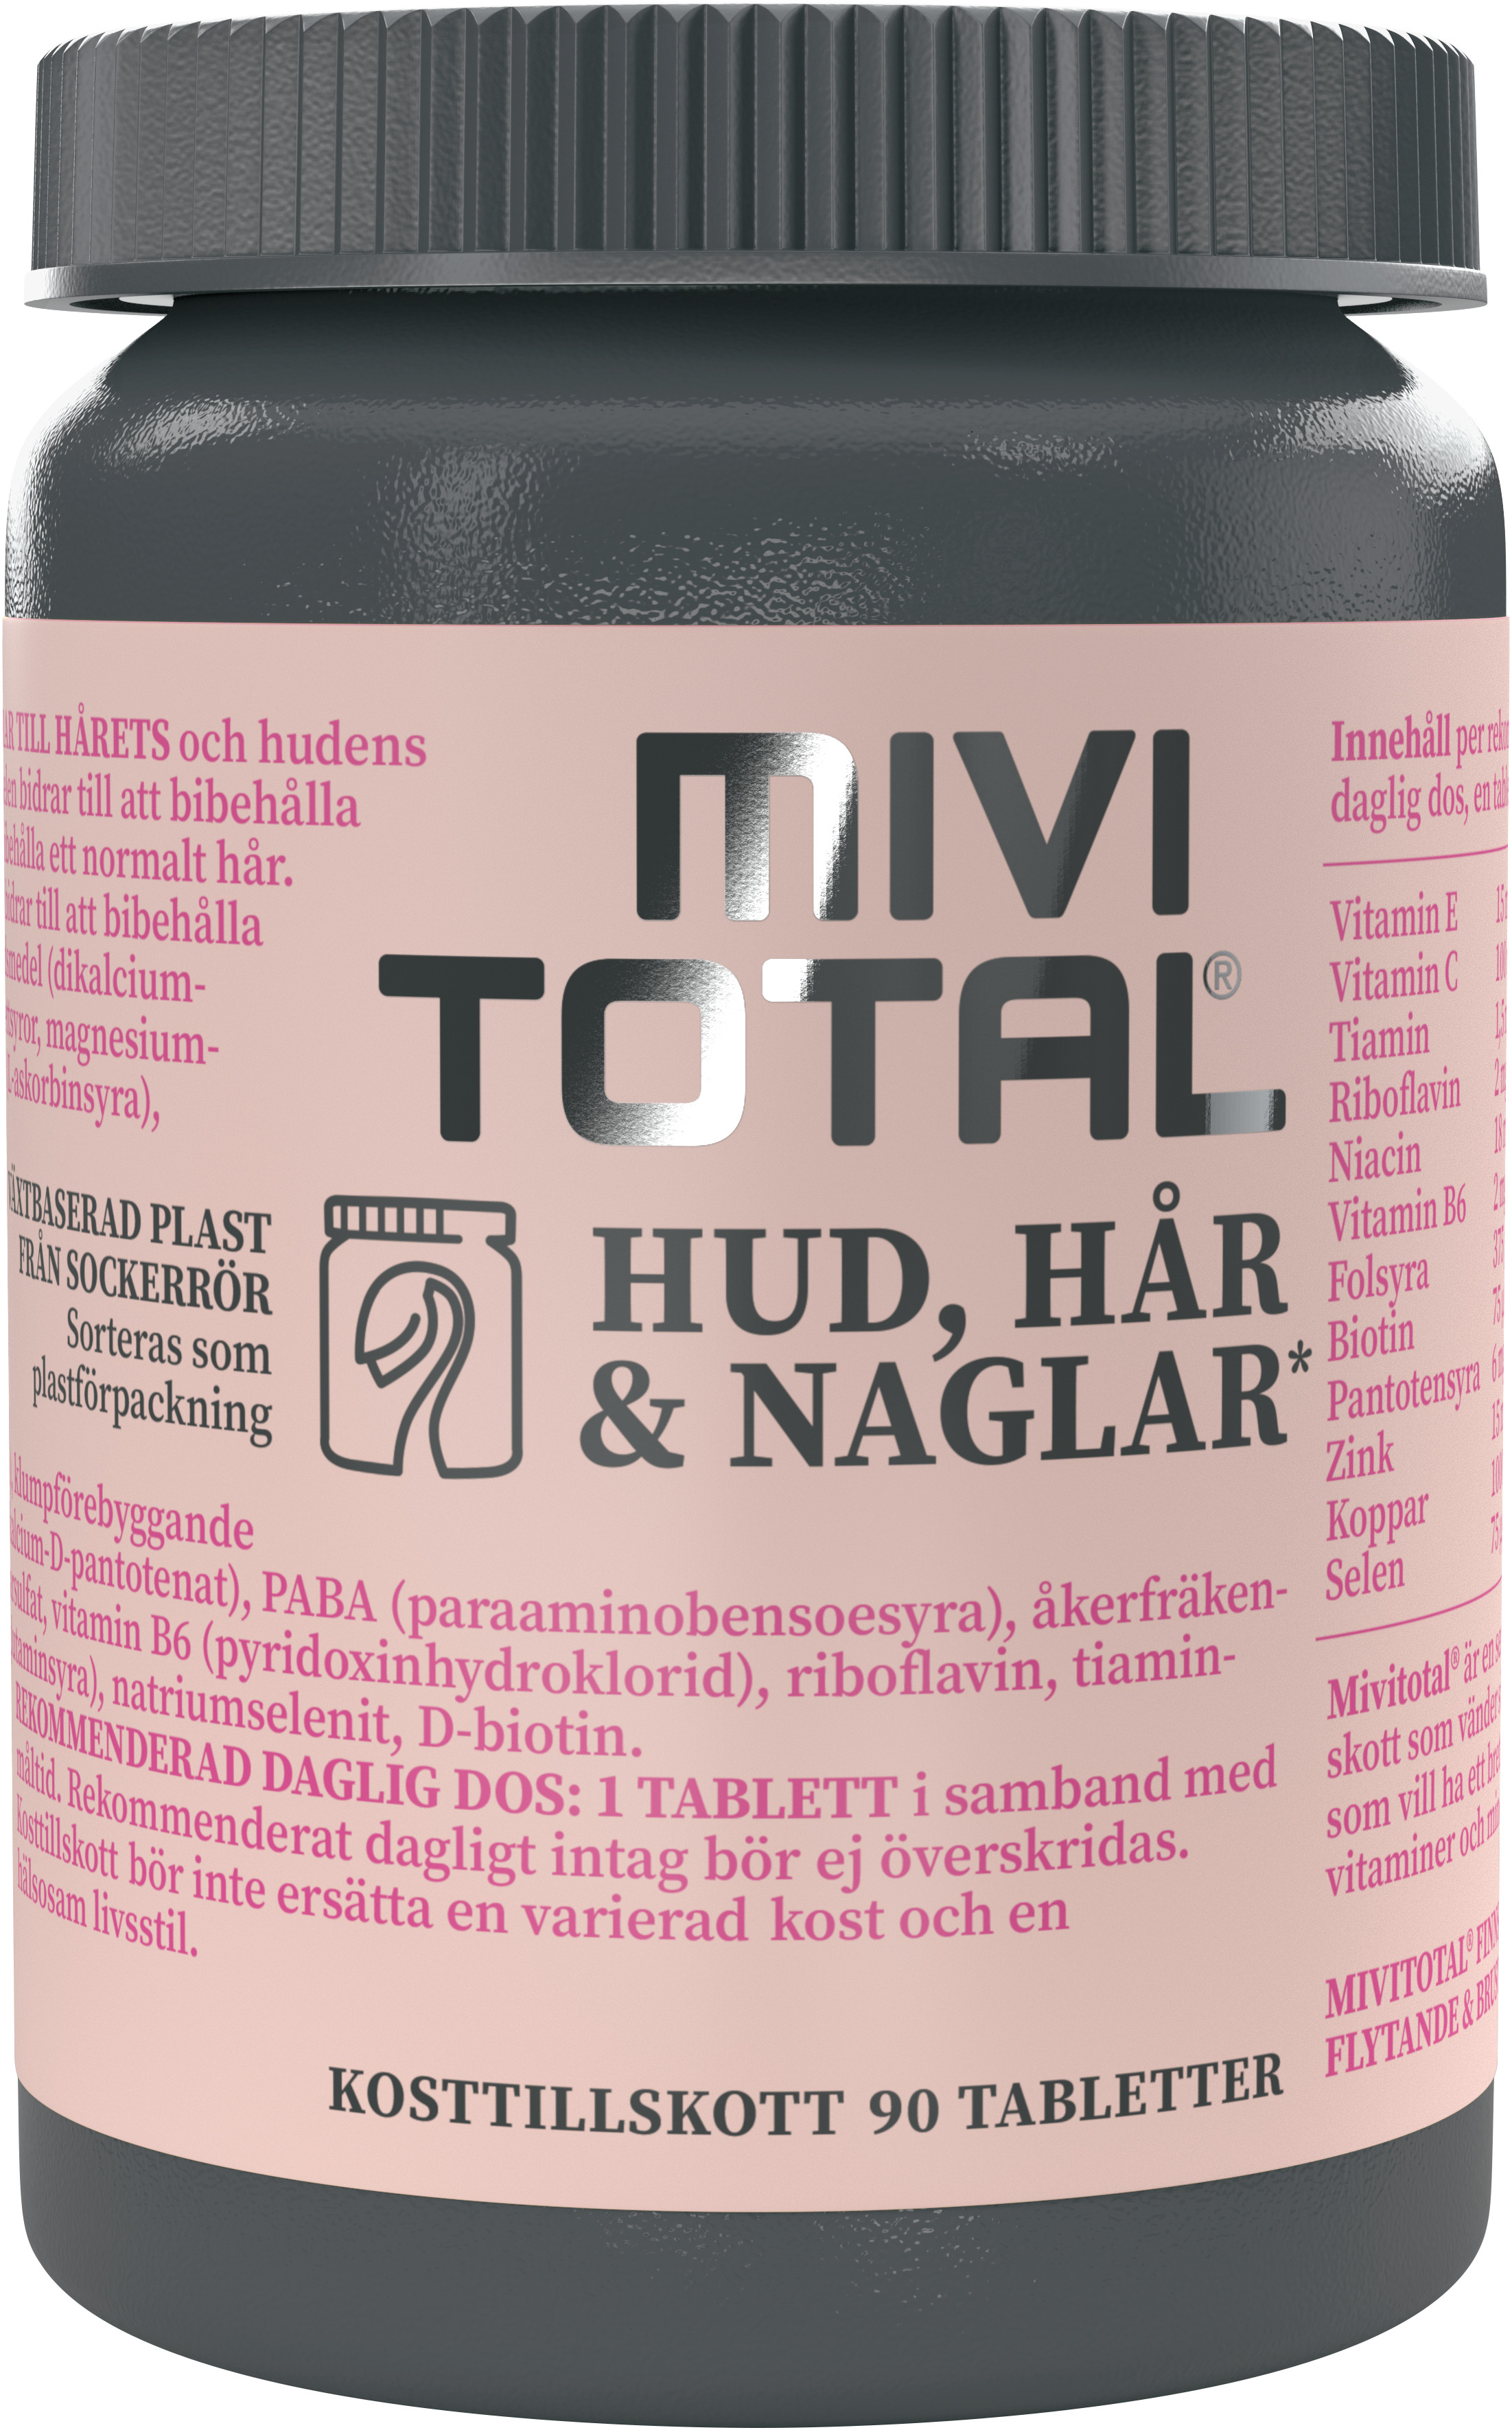 Mivitotal Hud, Hår & Naglar 90 tabletter